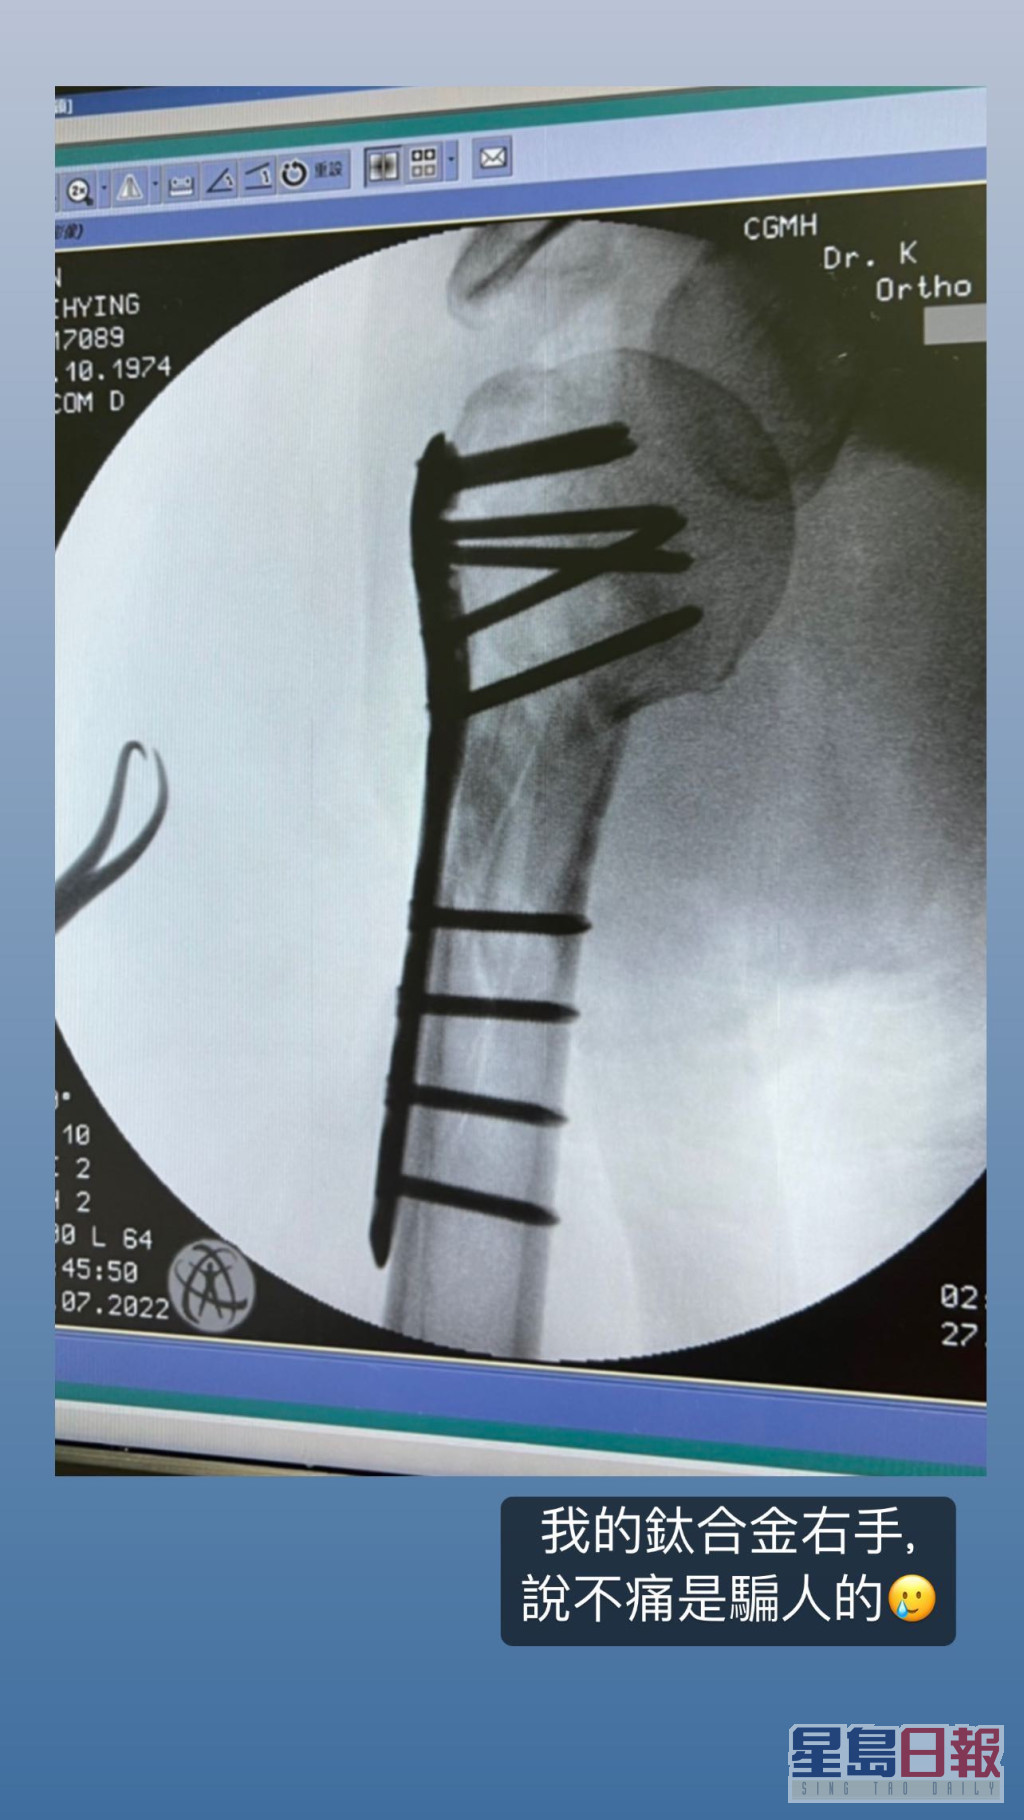 林志穎曾公開右臂的X光相，見到一排鋼釘及鋼板。  ​